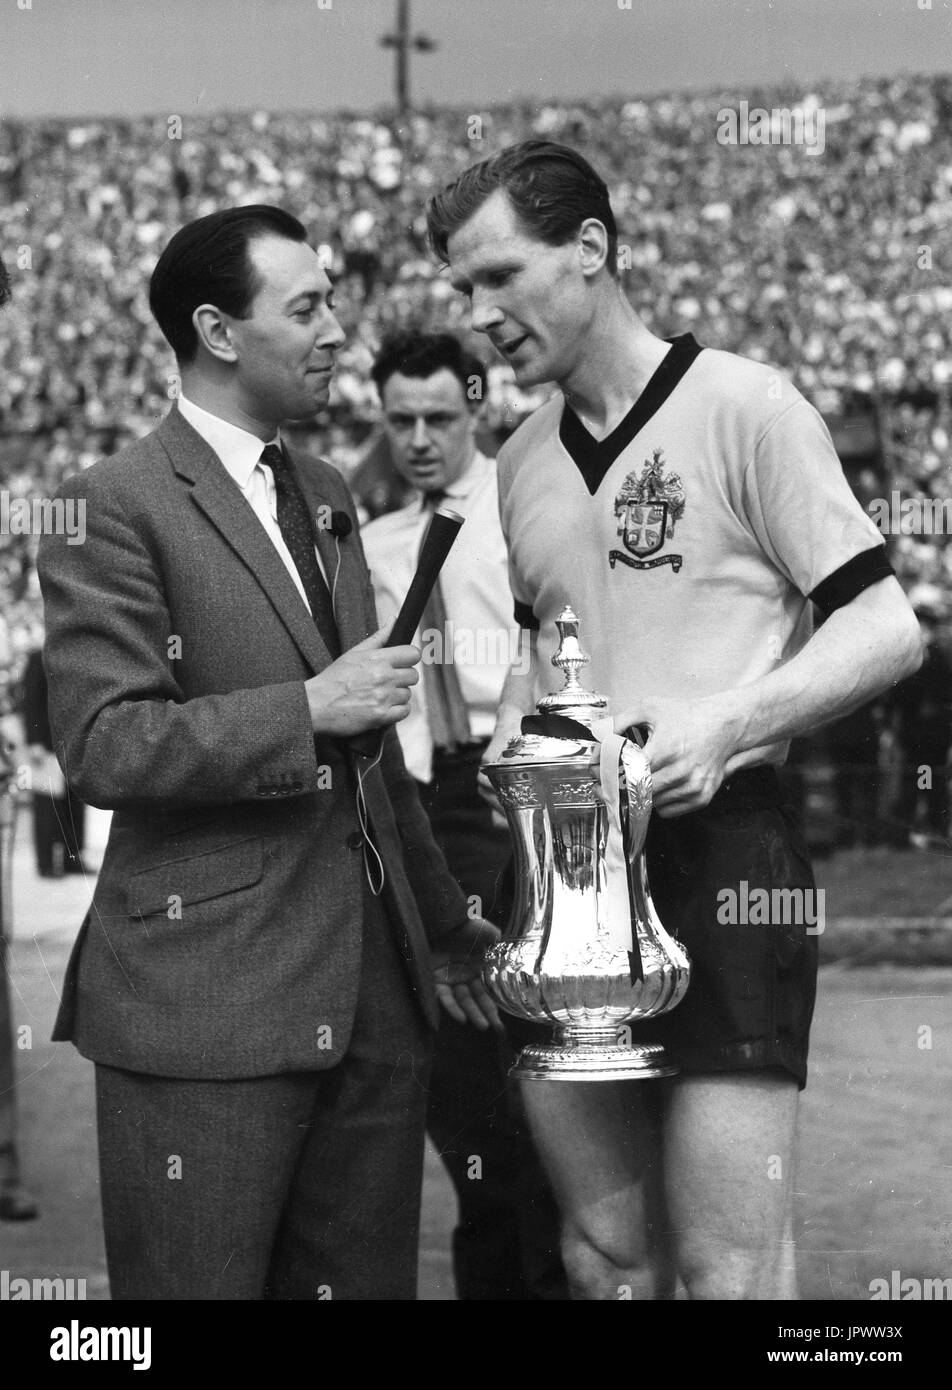 El comentarista deportivo de la BBC y presentador de televisión David Coleman entrevistando a ganar la Copa de la FA el capitán Bill Slater de Wolverhampton Wanderers en Wembley en mayo de 1960. Foto de stock